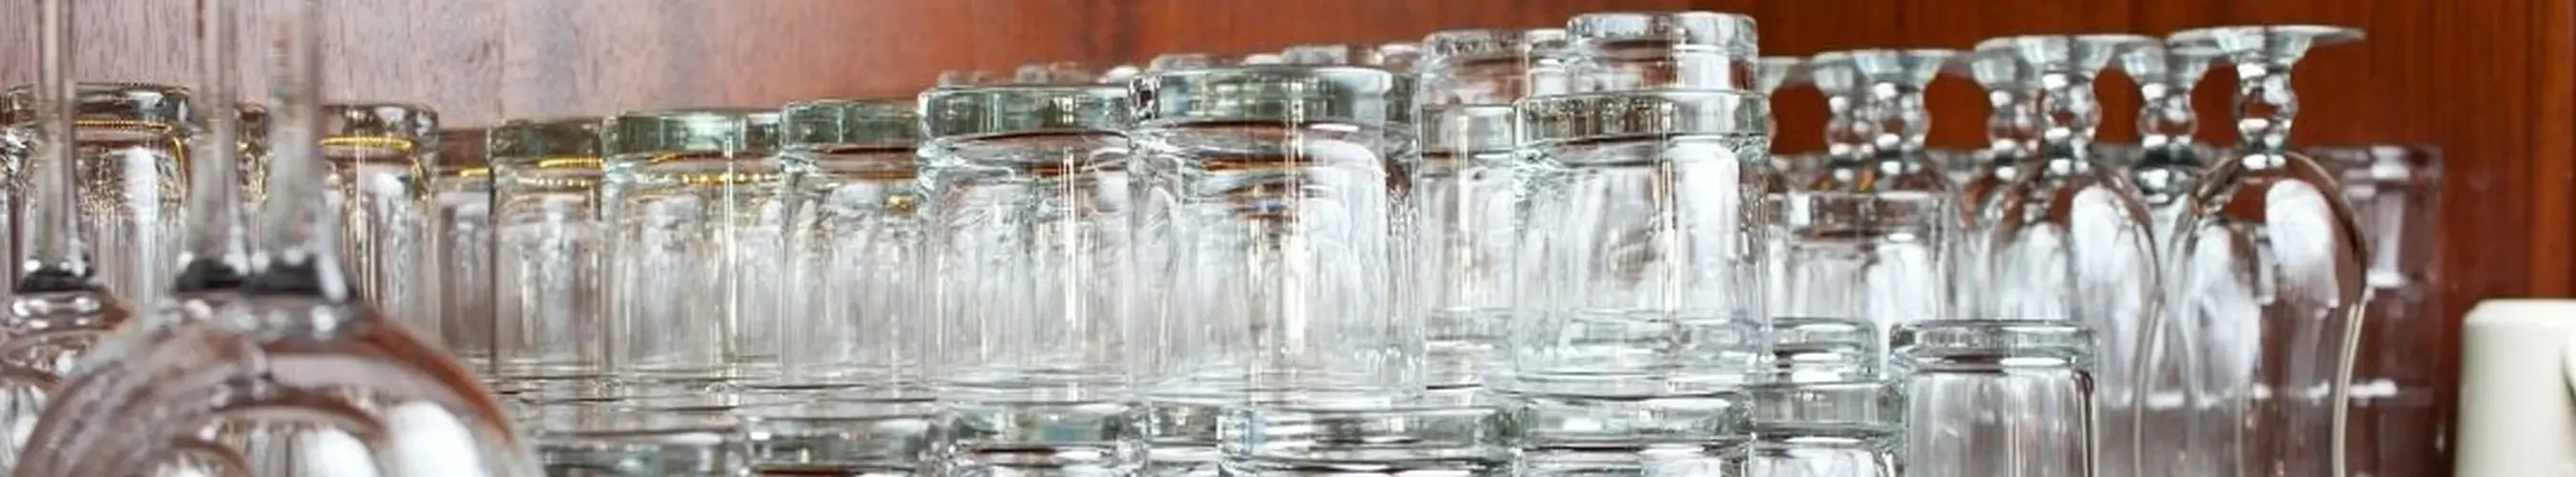 Gläser gestapelt